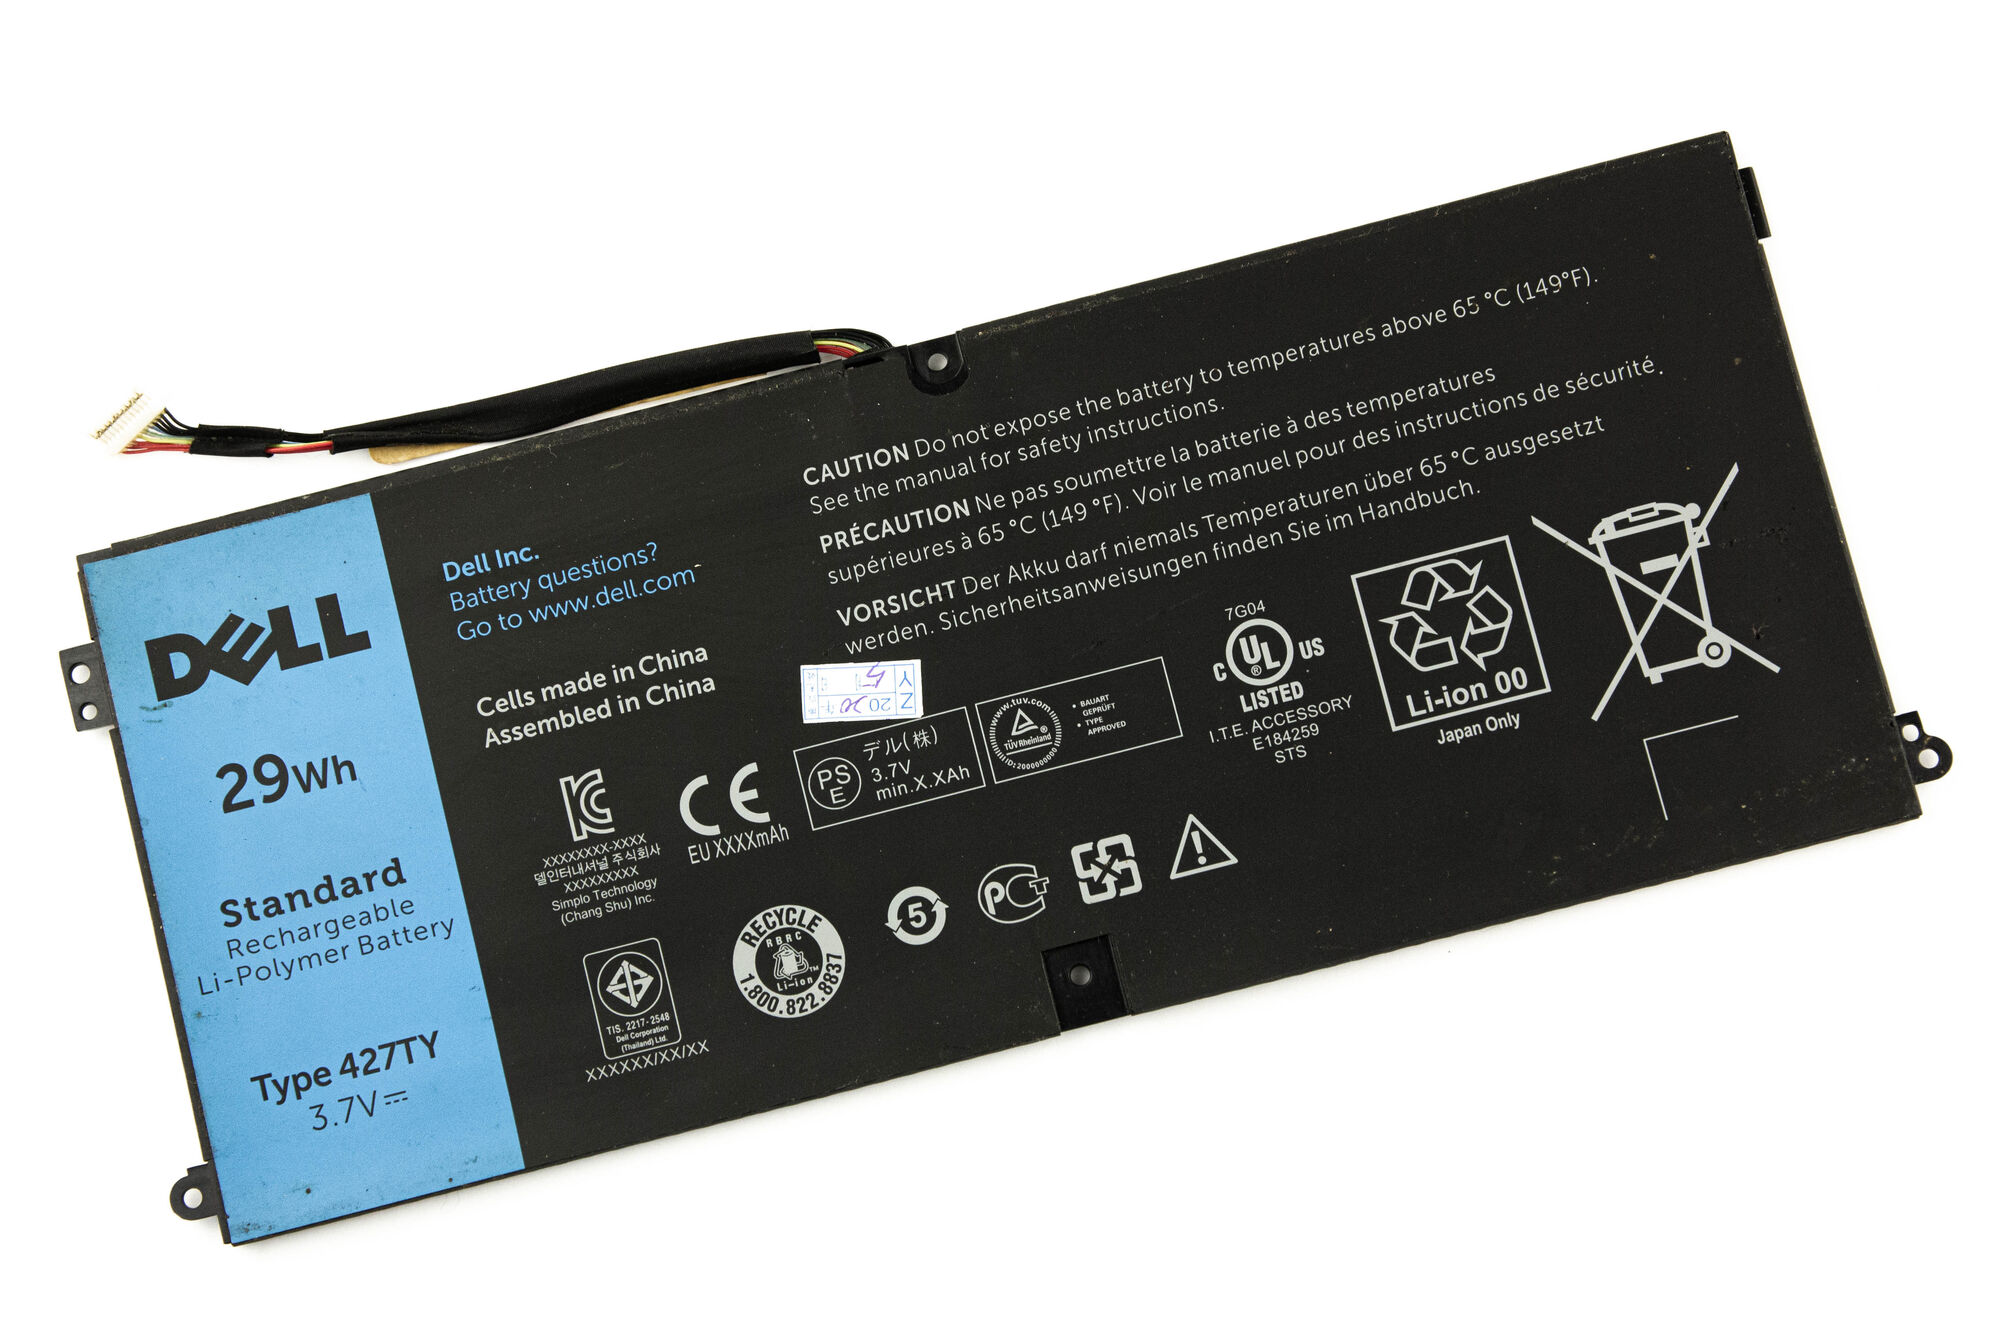 Аккумулятор для Dell Tablet 10 PC (3.7V 29Wh) p/n: 427TY DXR10